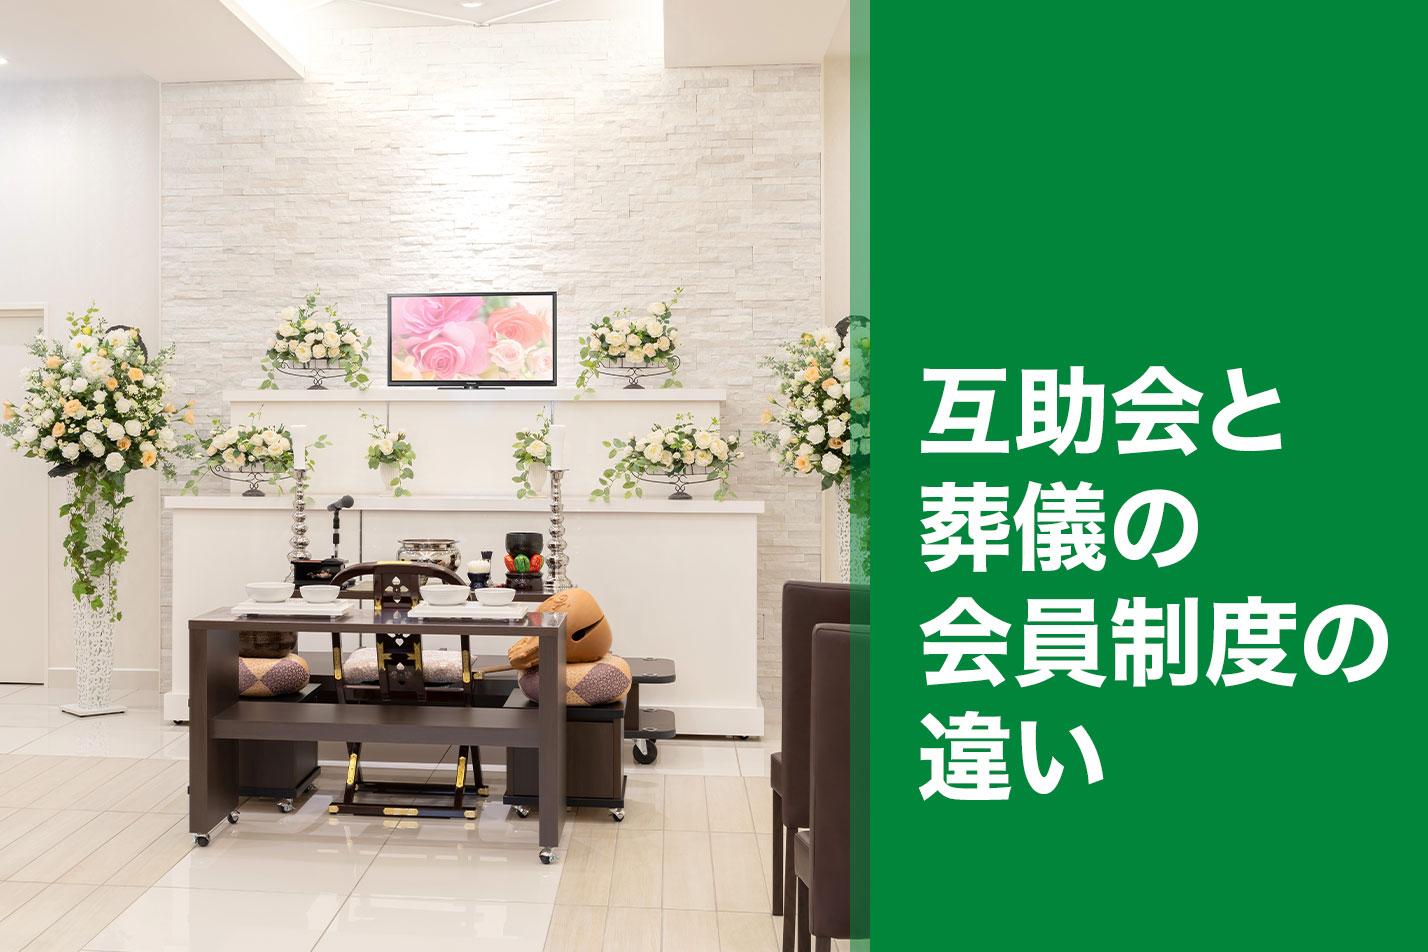  【立川市】互助会と葬儀の会員制度の違いのイメージ画像